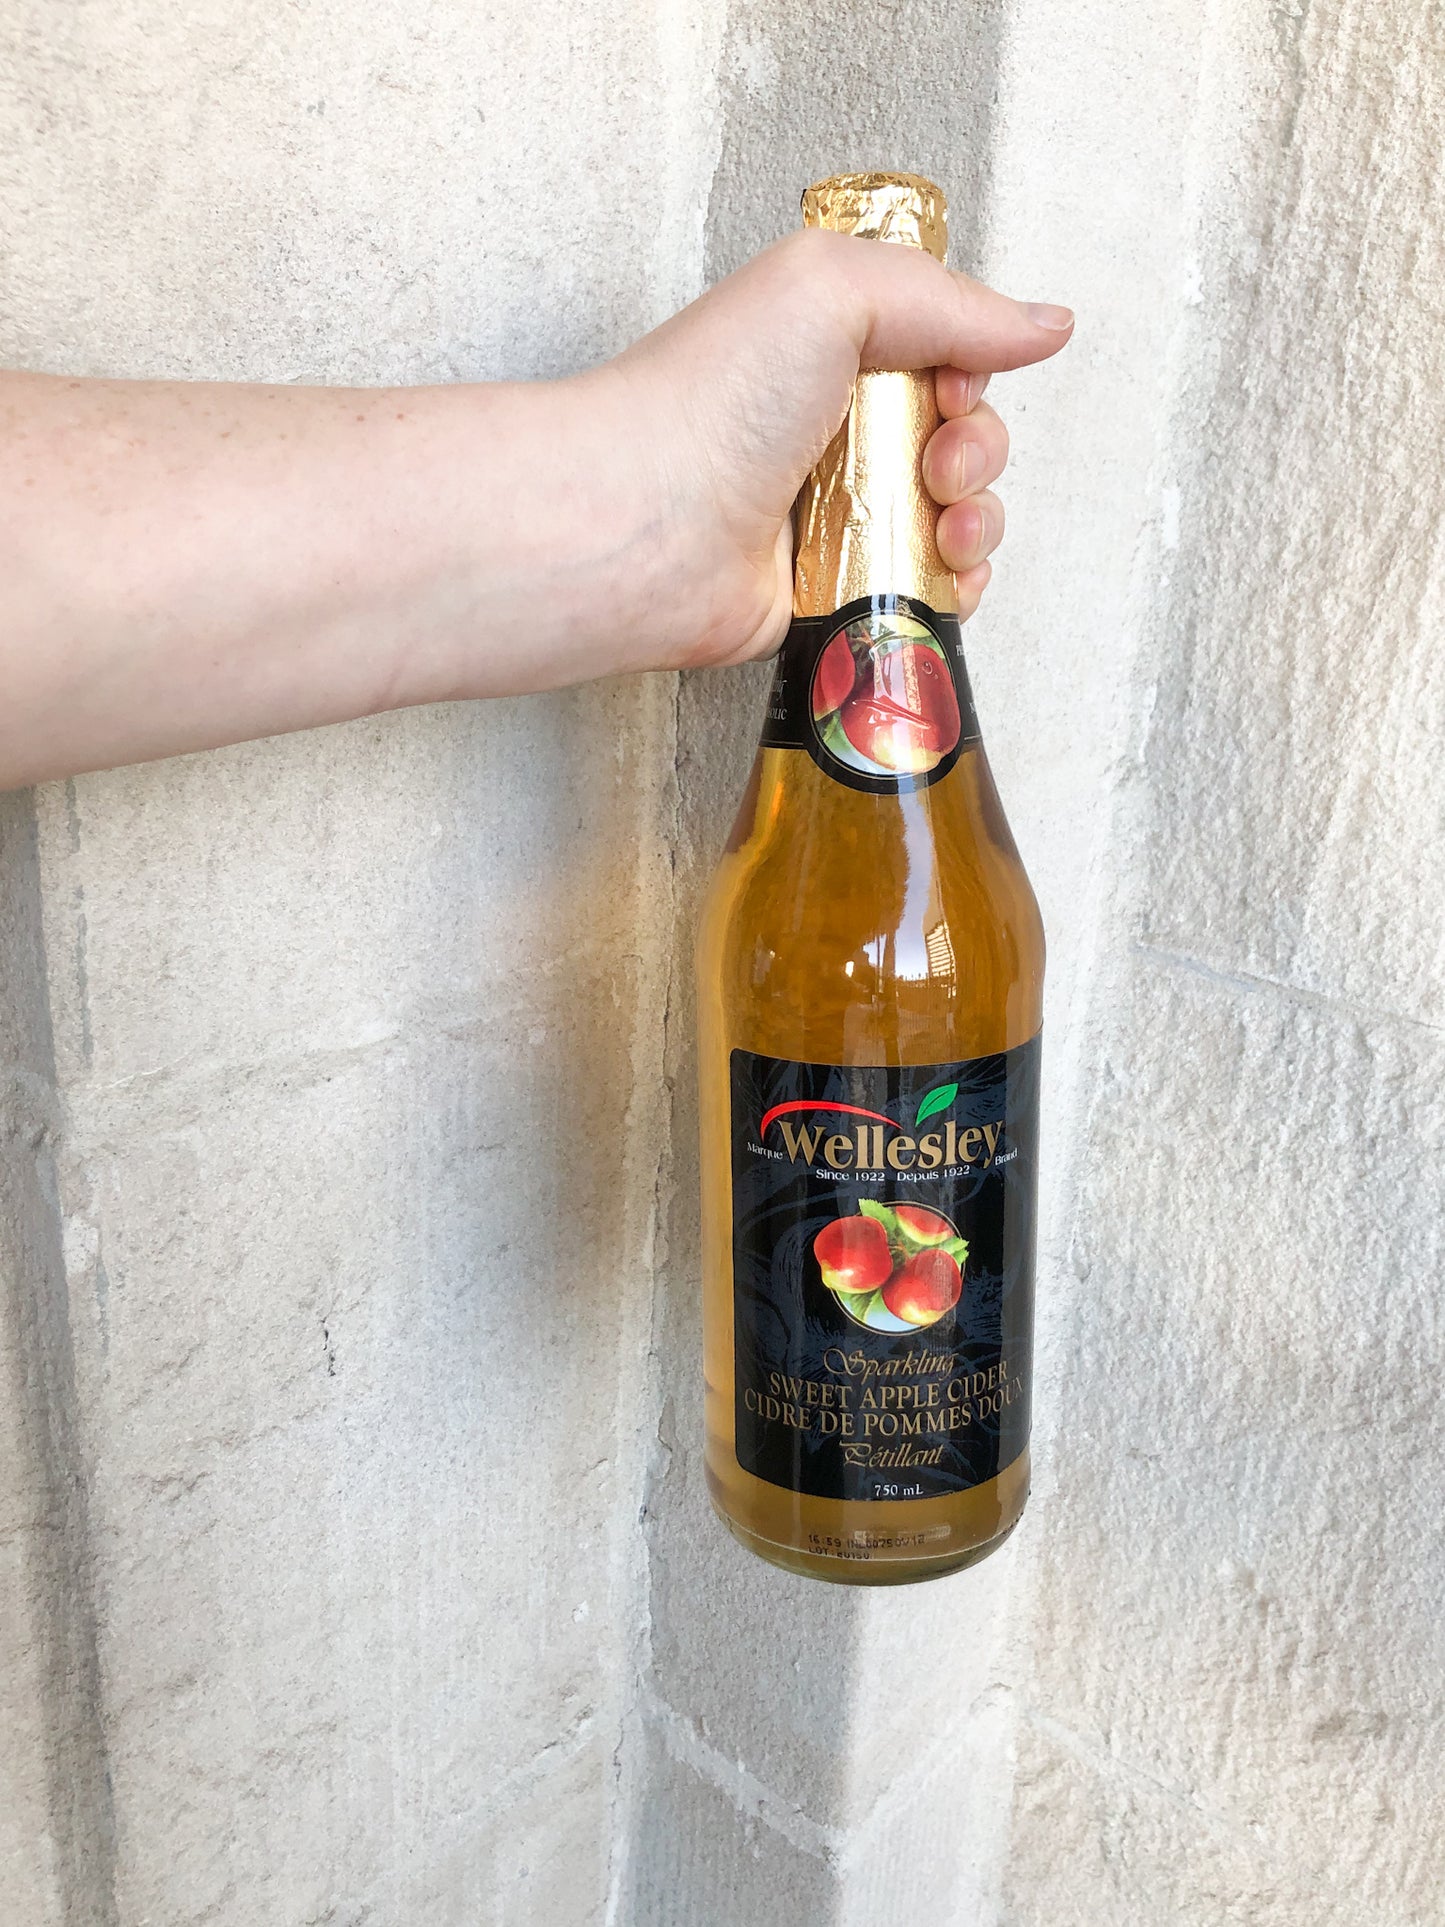 Wellesley Sparkling Sweet Apple Cider 750ml - Preservative Free & No Added Sugar